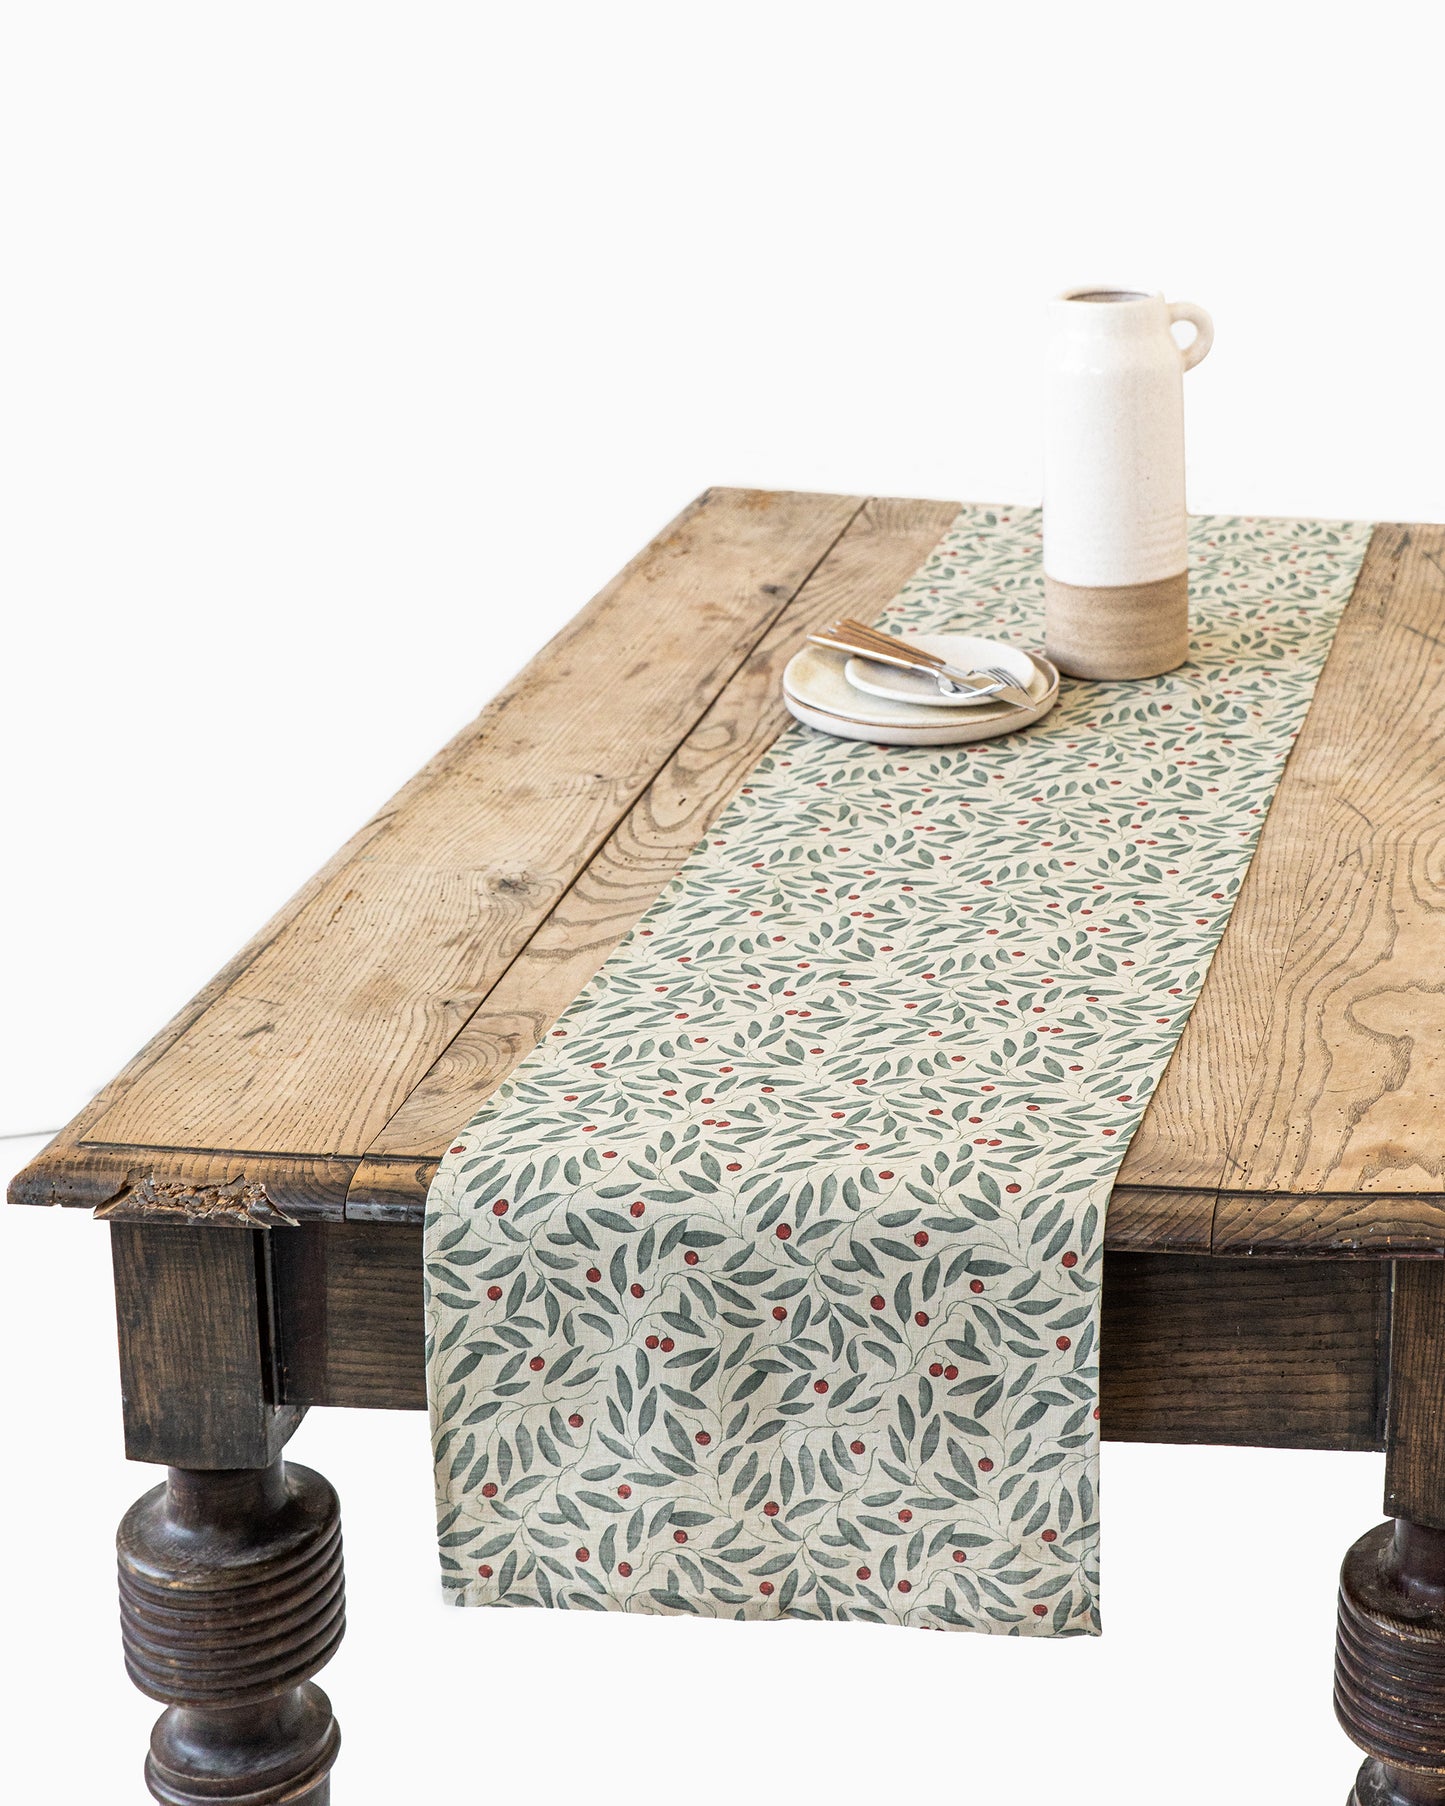 Linen table runner in Mistletoe print - MagicLinen